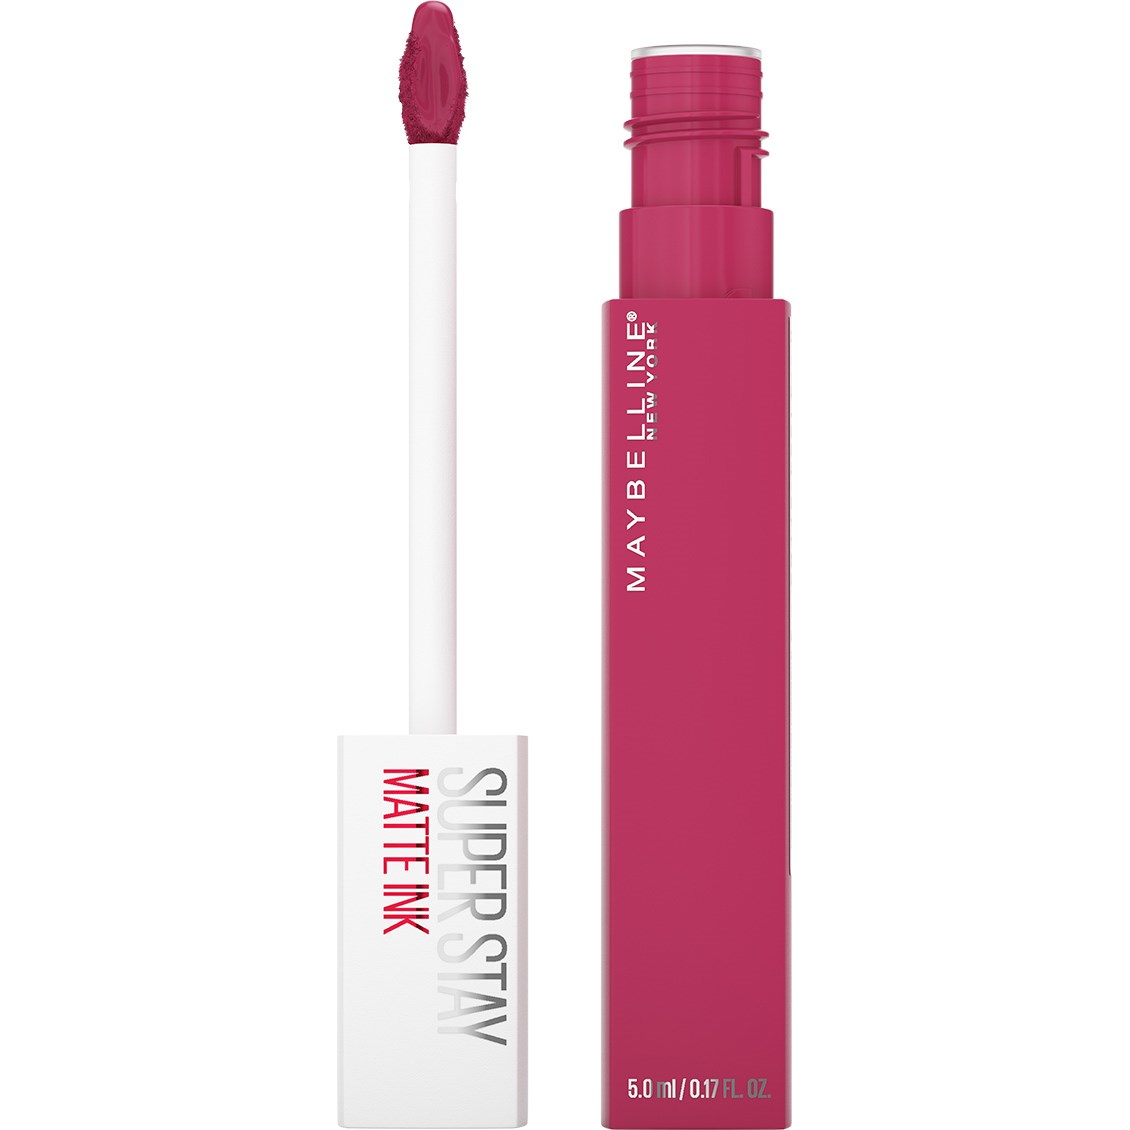 Maybelline New York Super Stay Matte Ink Liquid Lipstick Pathfinder 15